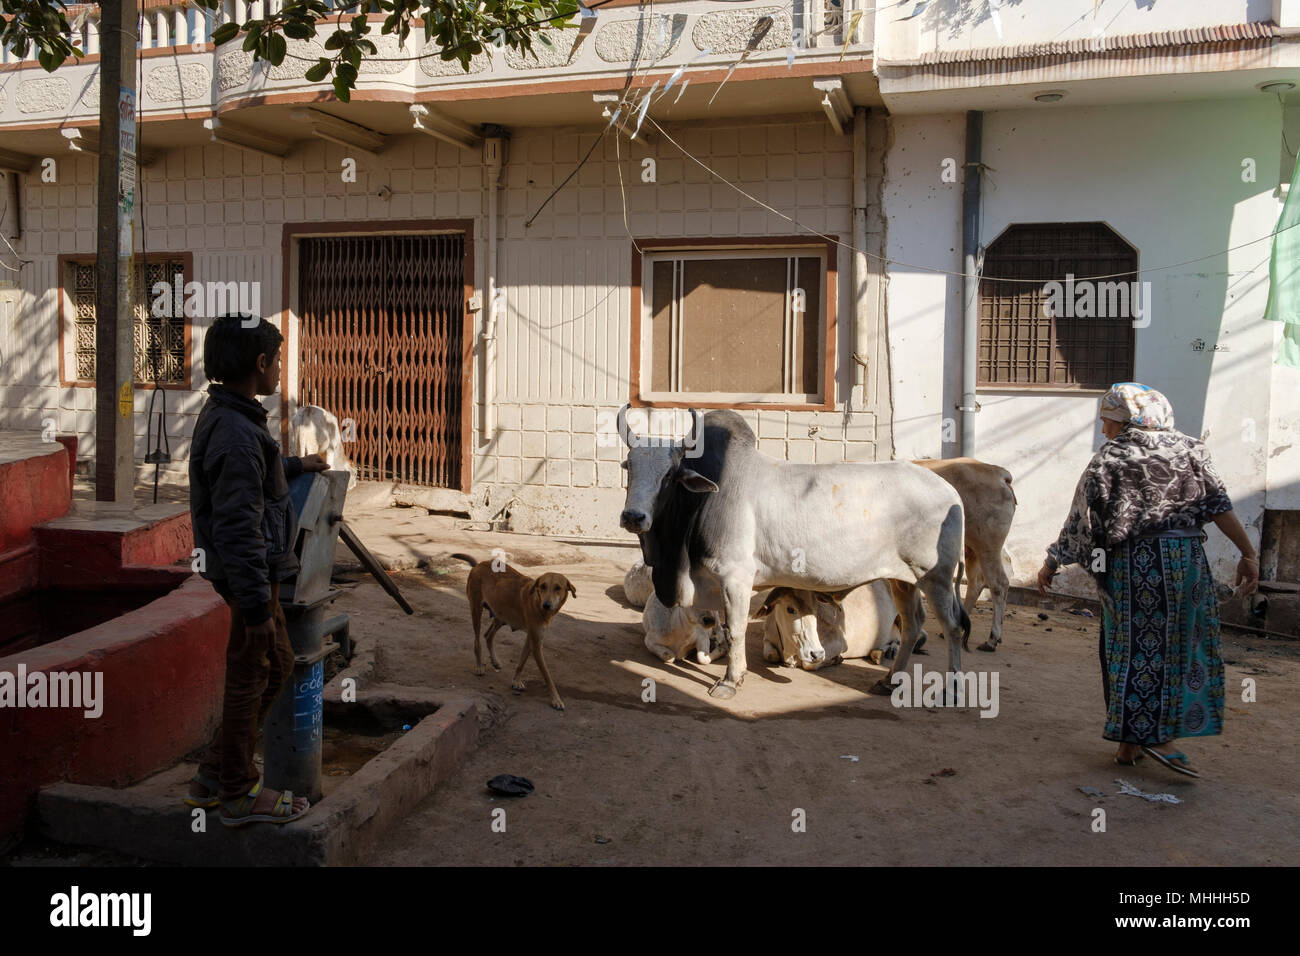 Un garçon, un chien et une femme avec des vaches dans les rues de Bundi. Le Rajasthan. L'Inde Banque D'Images